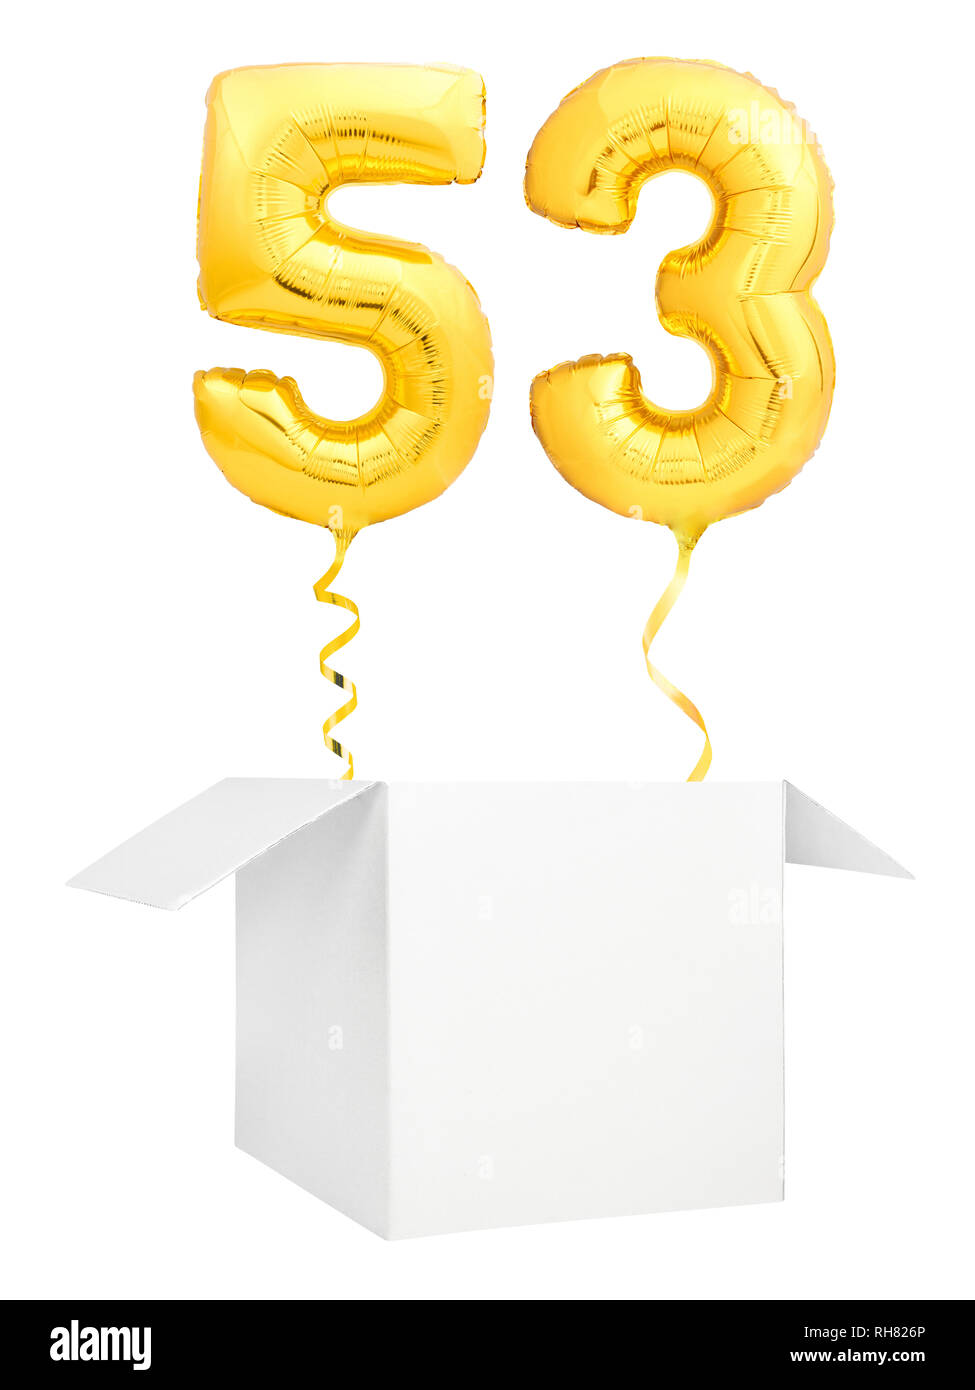 Golden número cincuenta y tres globos inflables con cinta dorada que volaba fuera de cuadro en blanco aislado sobre fondo blanco. Foto de stock